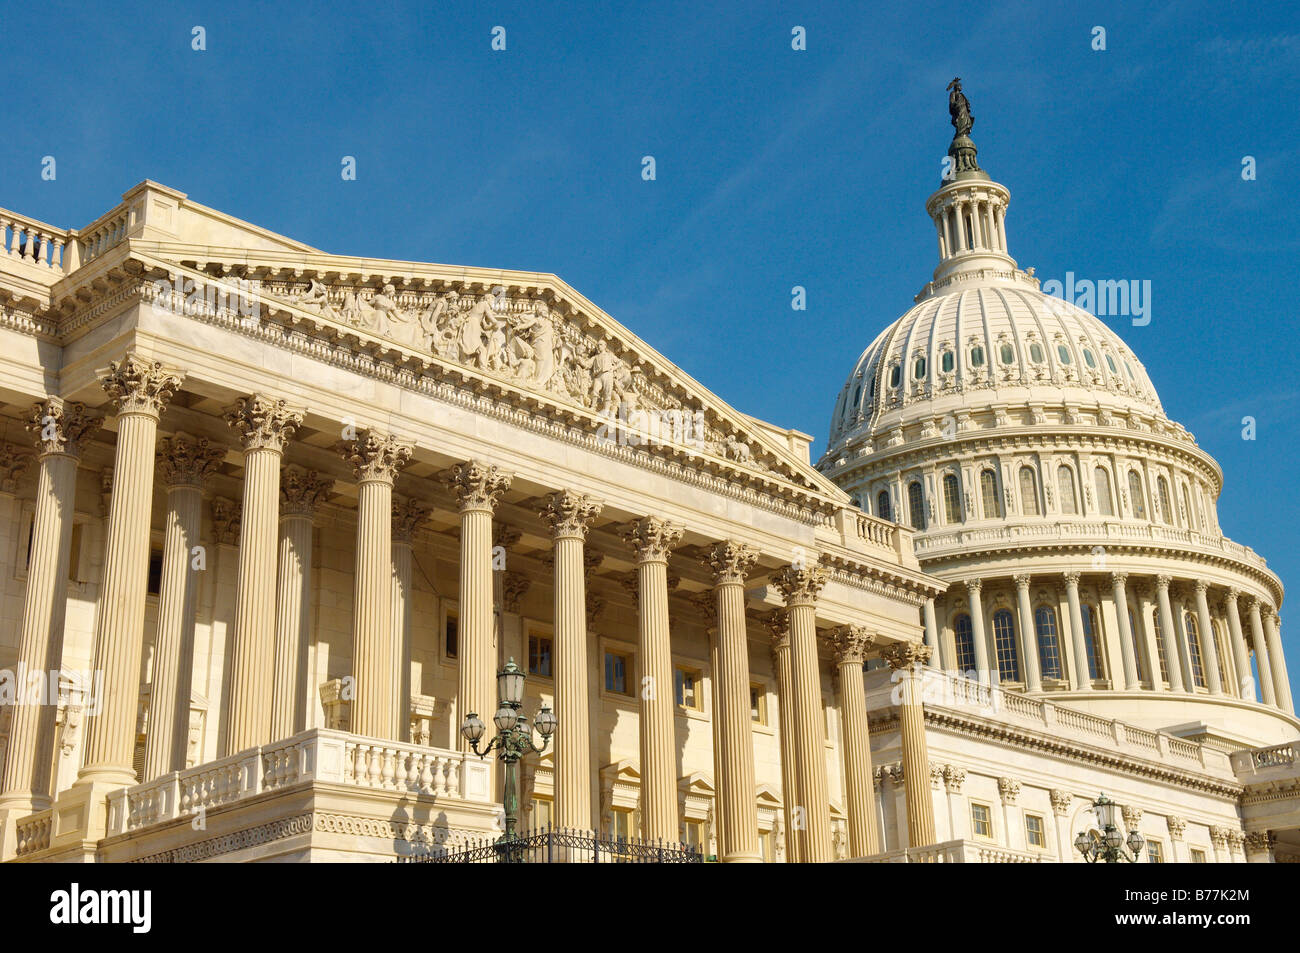 El edificio del Capitolio de los Estados Unidos, Washington, D.C. Foto de stock